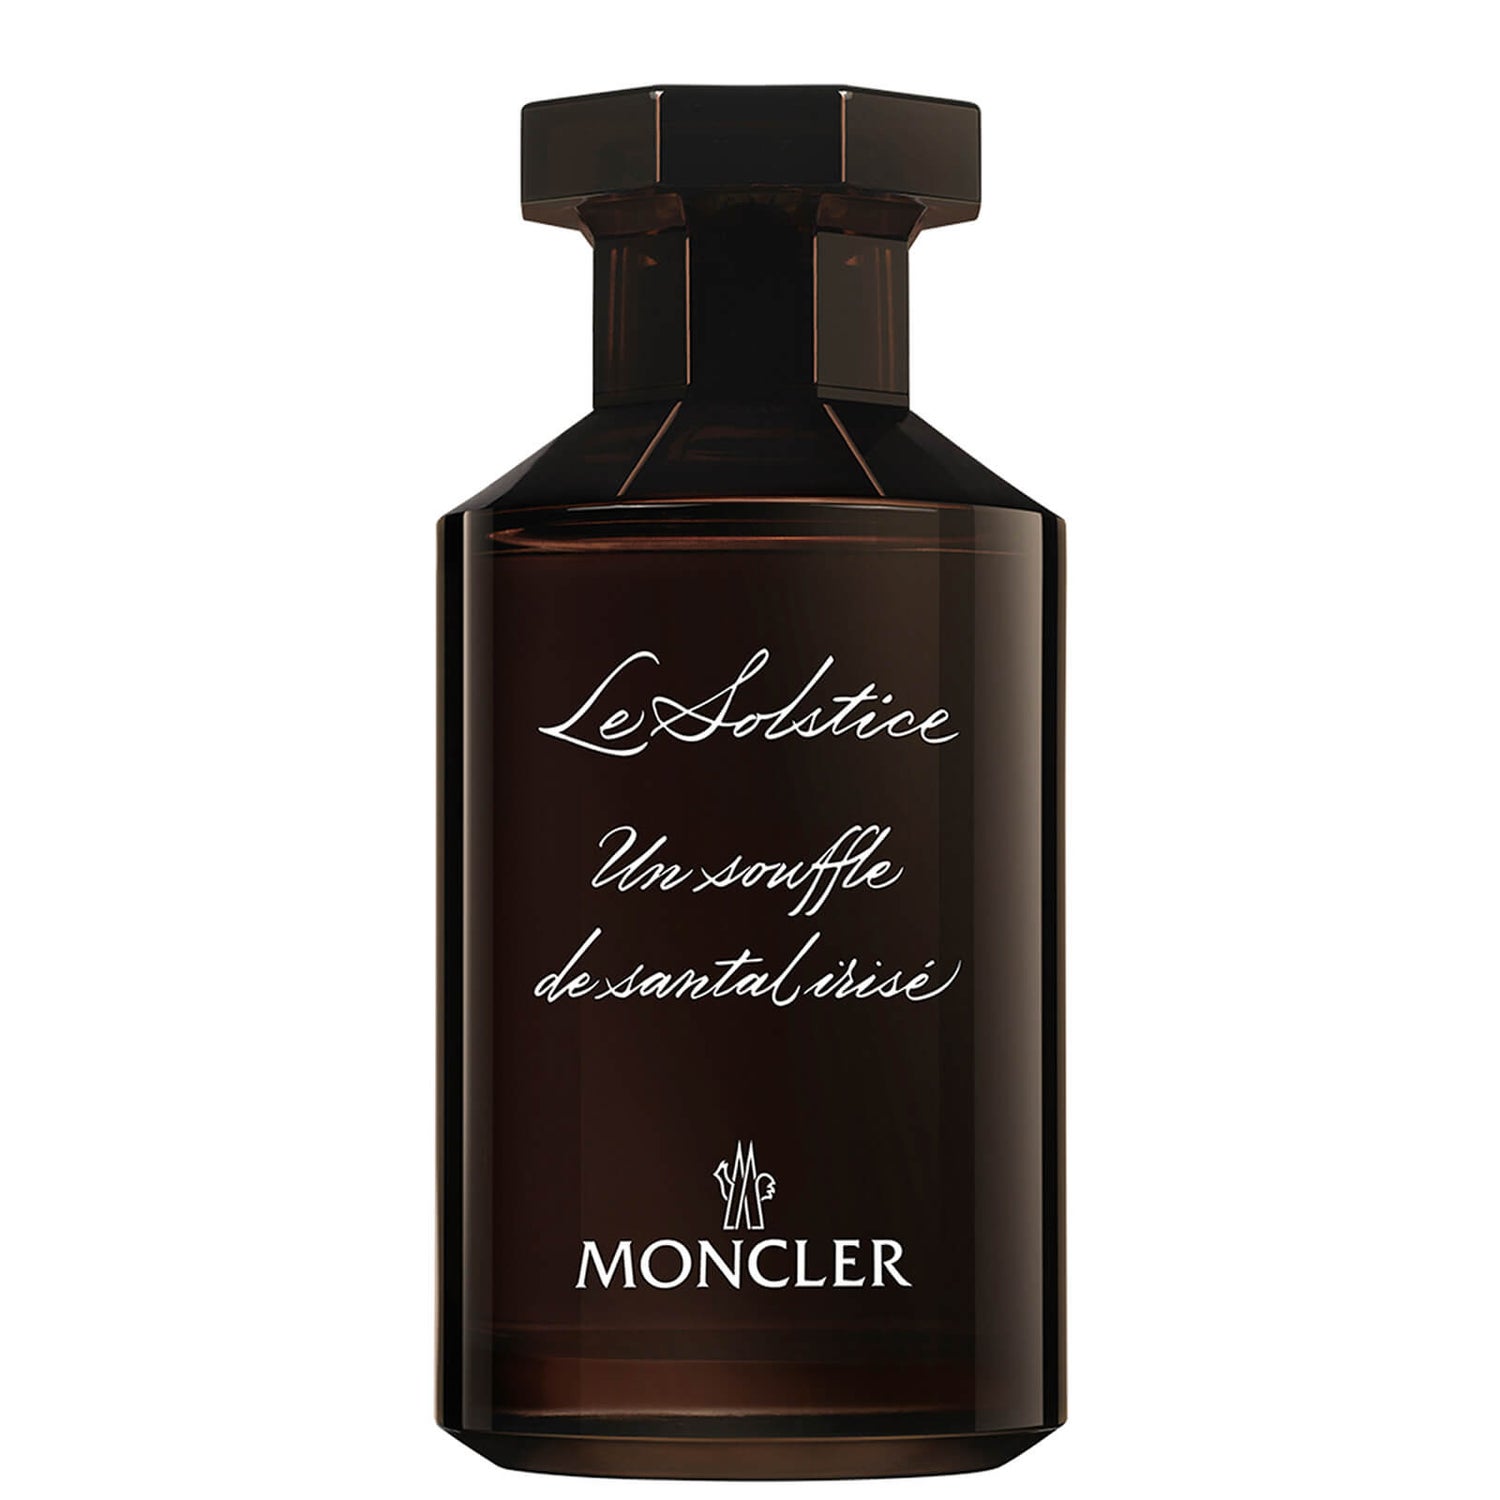 Moncler Les Sommets Collection Les Solstice Eau de Parfum 100ml